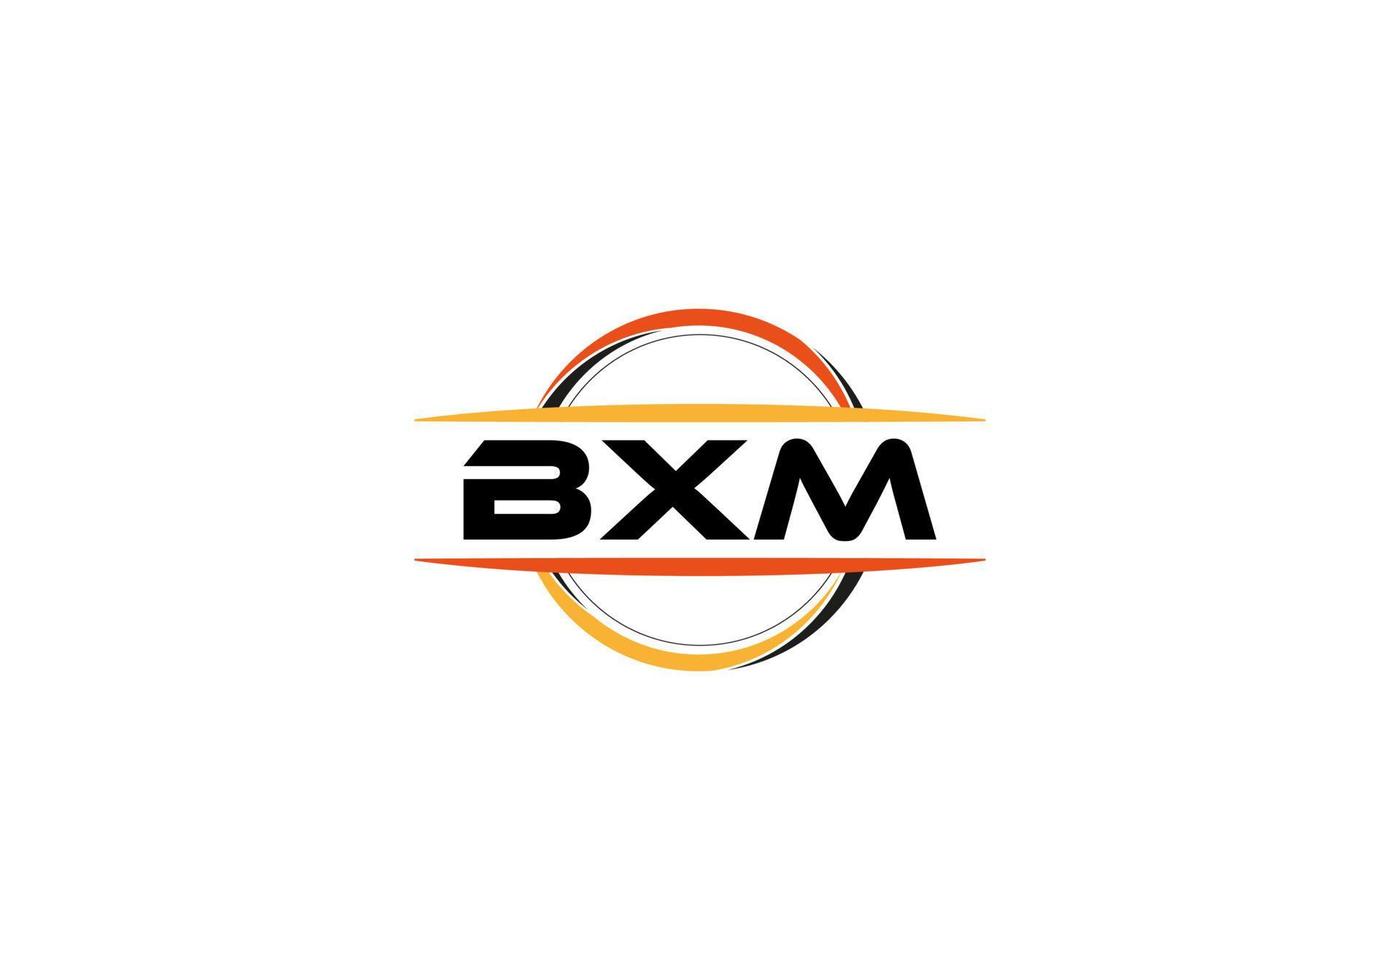 bxm-Buchstaben-Lizenzgebühren-Mandala-Form-Logo. bxm Pinselkunst-Logo. bxm-Logo für Unternehmen, Unternehmen und kommerzielle Zwecke. vektor